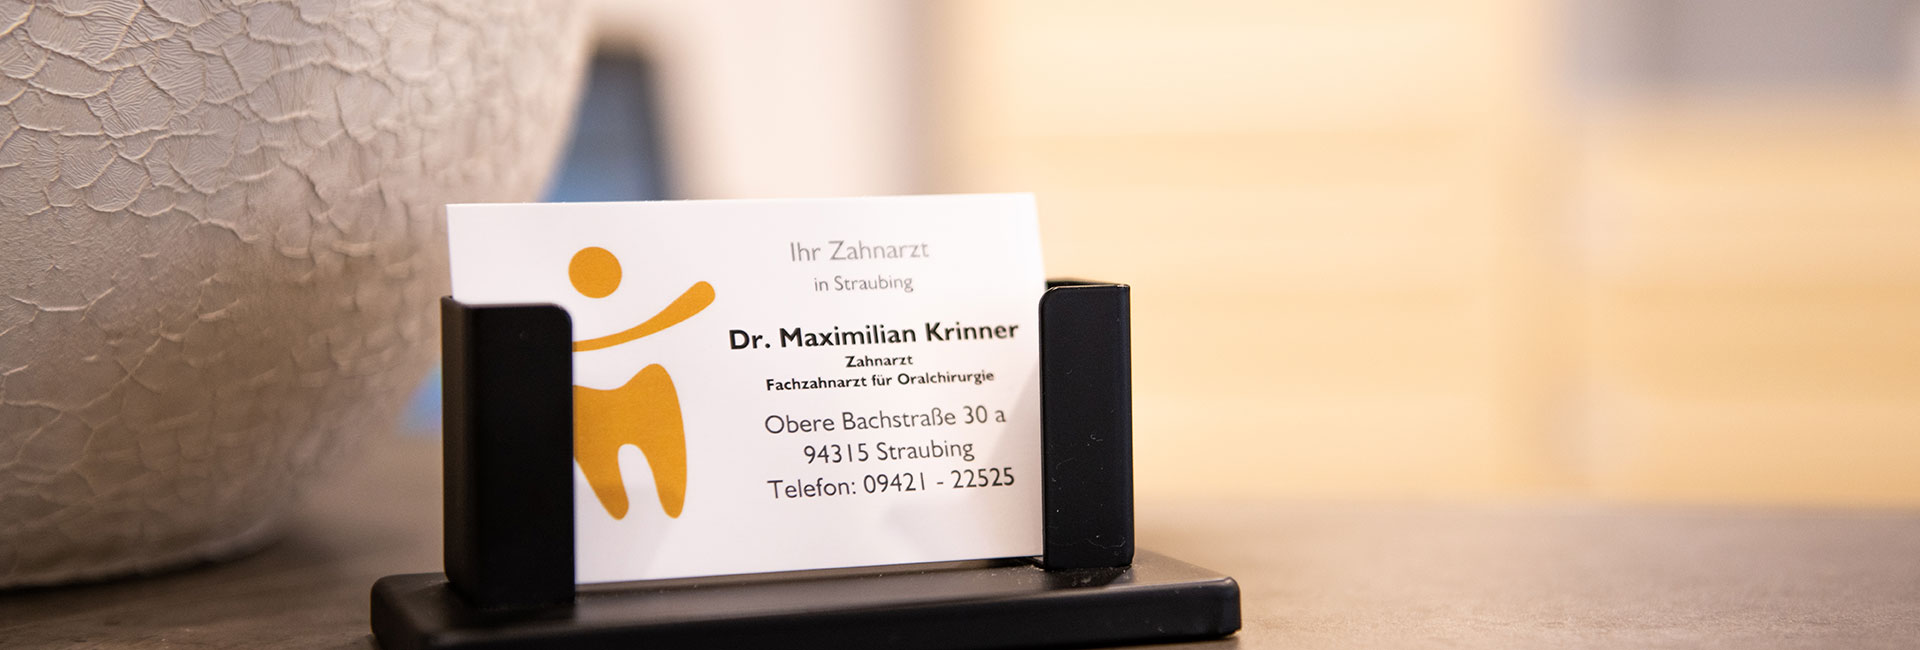 Visitenkarte von Zahnarzt Krinner in Straubing